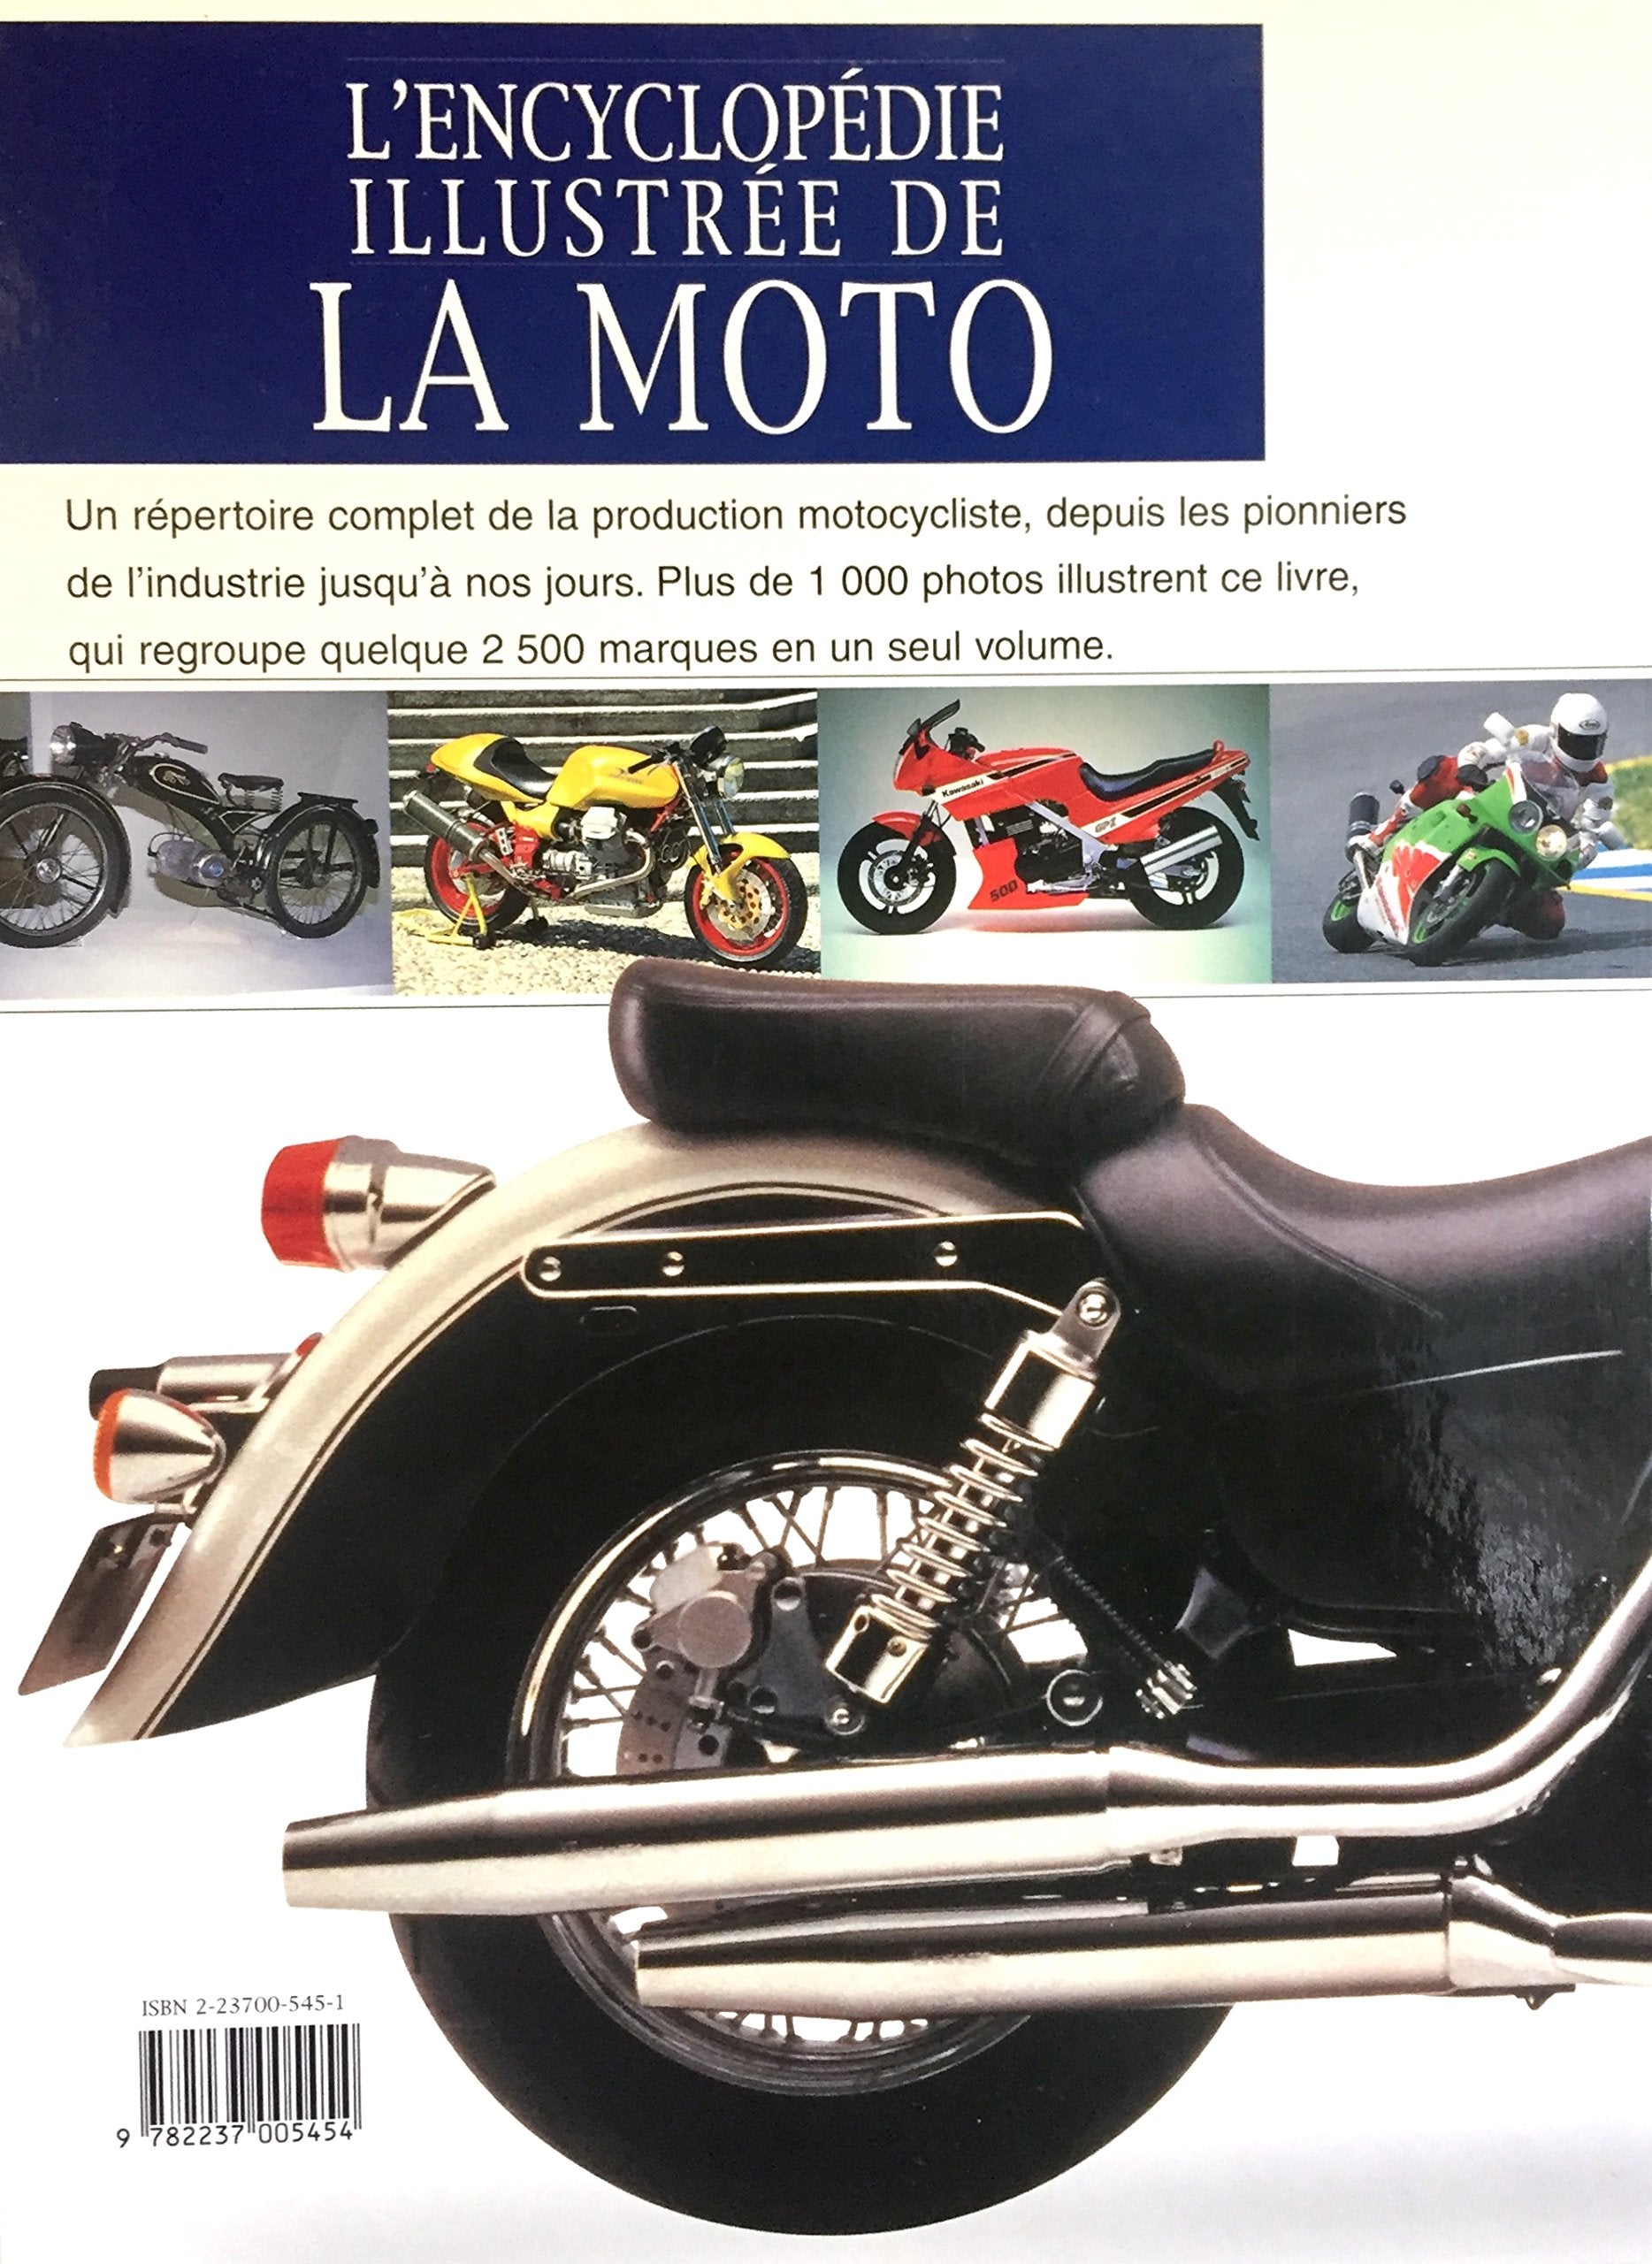 L'encyclopédie illustrée de la moto